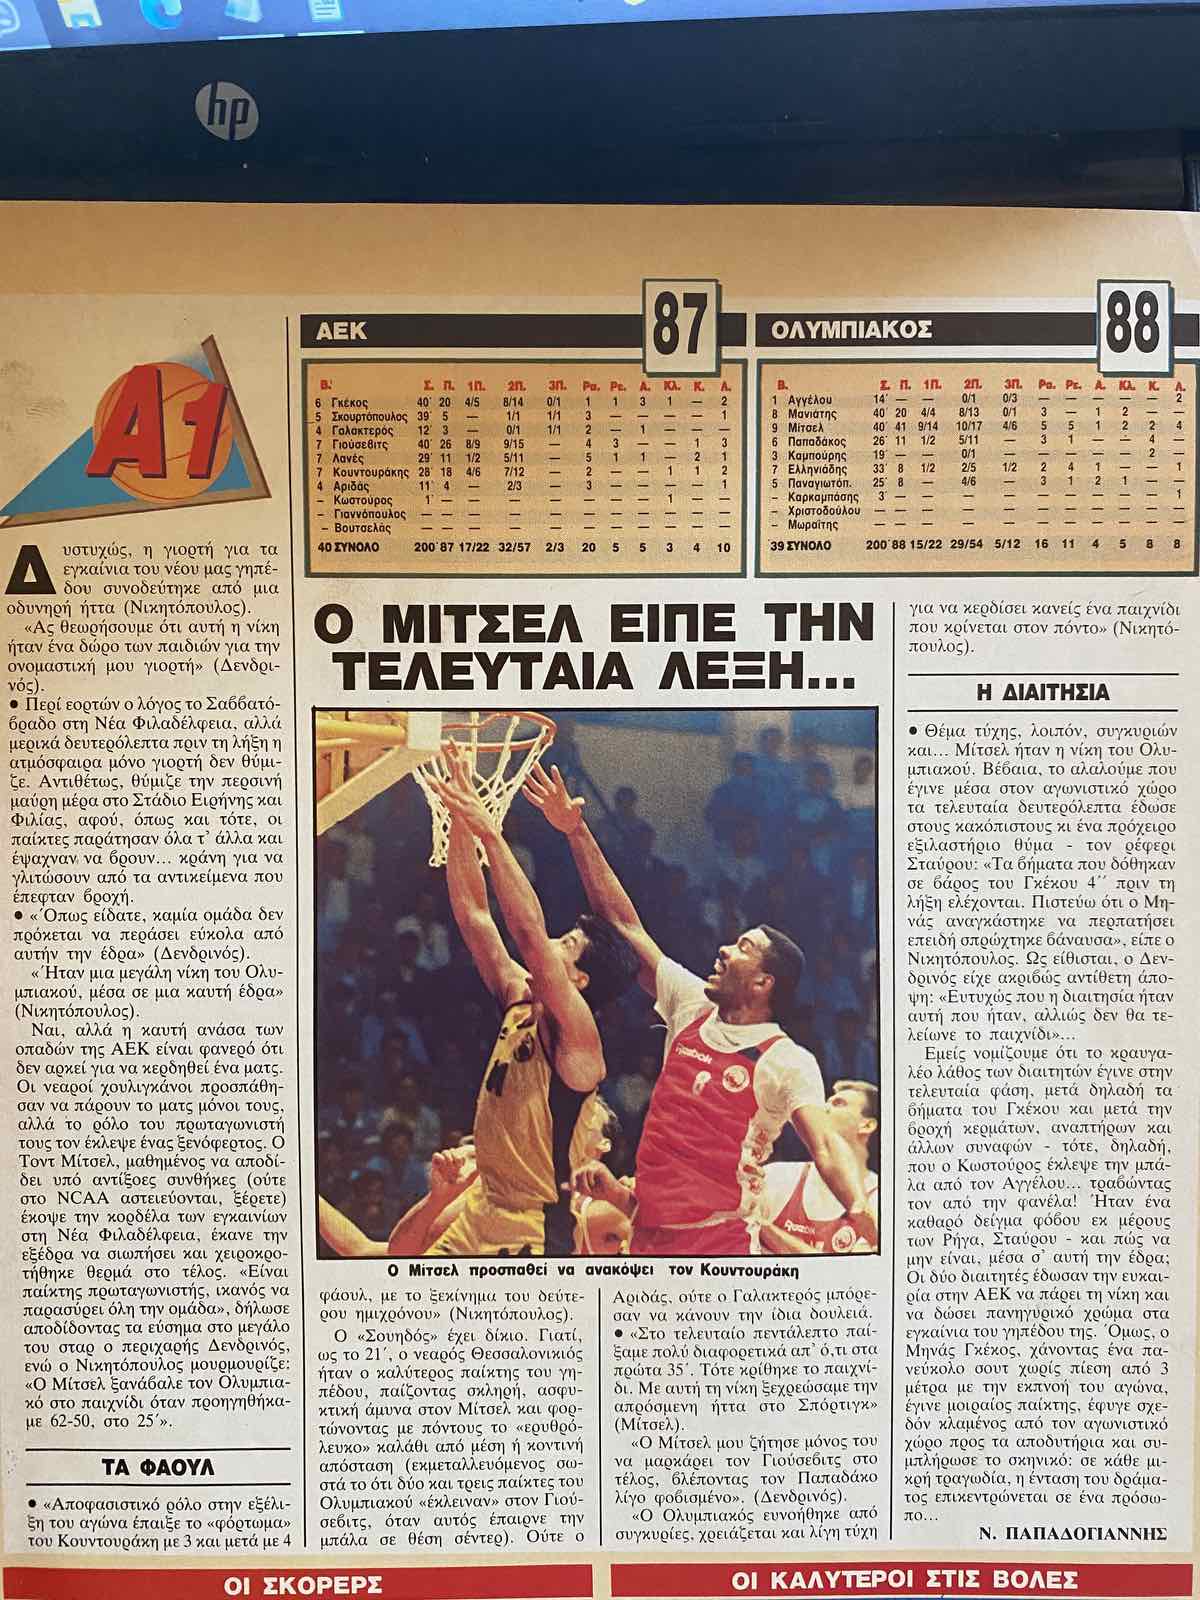 Το ρεπορτάζ του Τρίποντου για τον αγώνα ΑΕΚ-Ολυμπιακού με τον οποίον εγκαινιάστηκε το "Γ. Μόσχος" το 1989